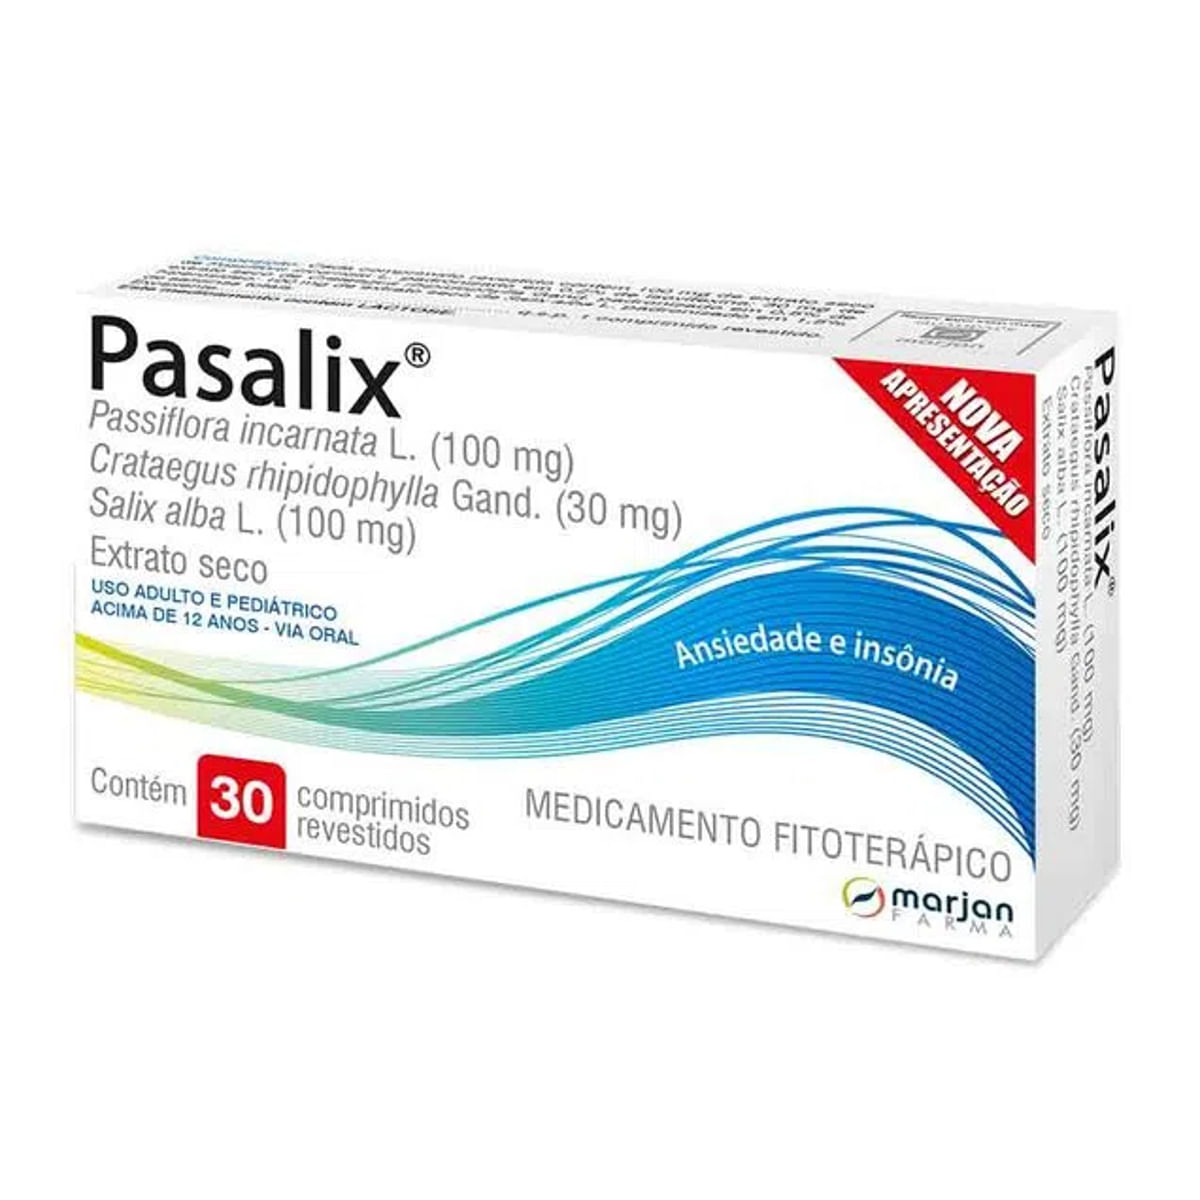 pasalix-30-comprimidos-1.jpg